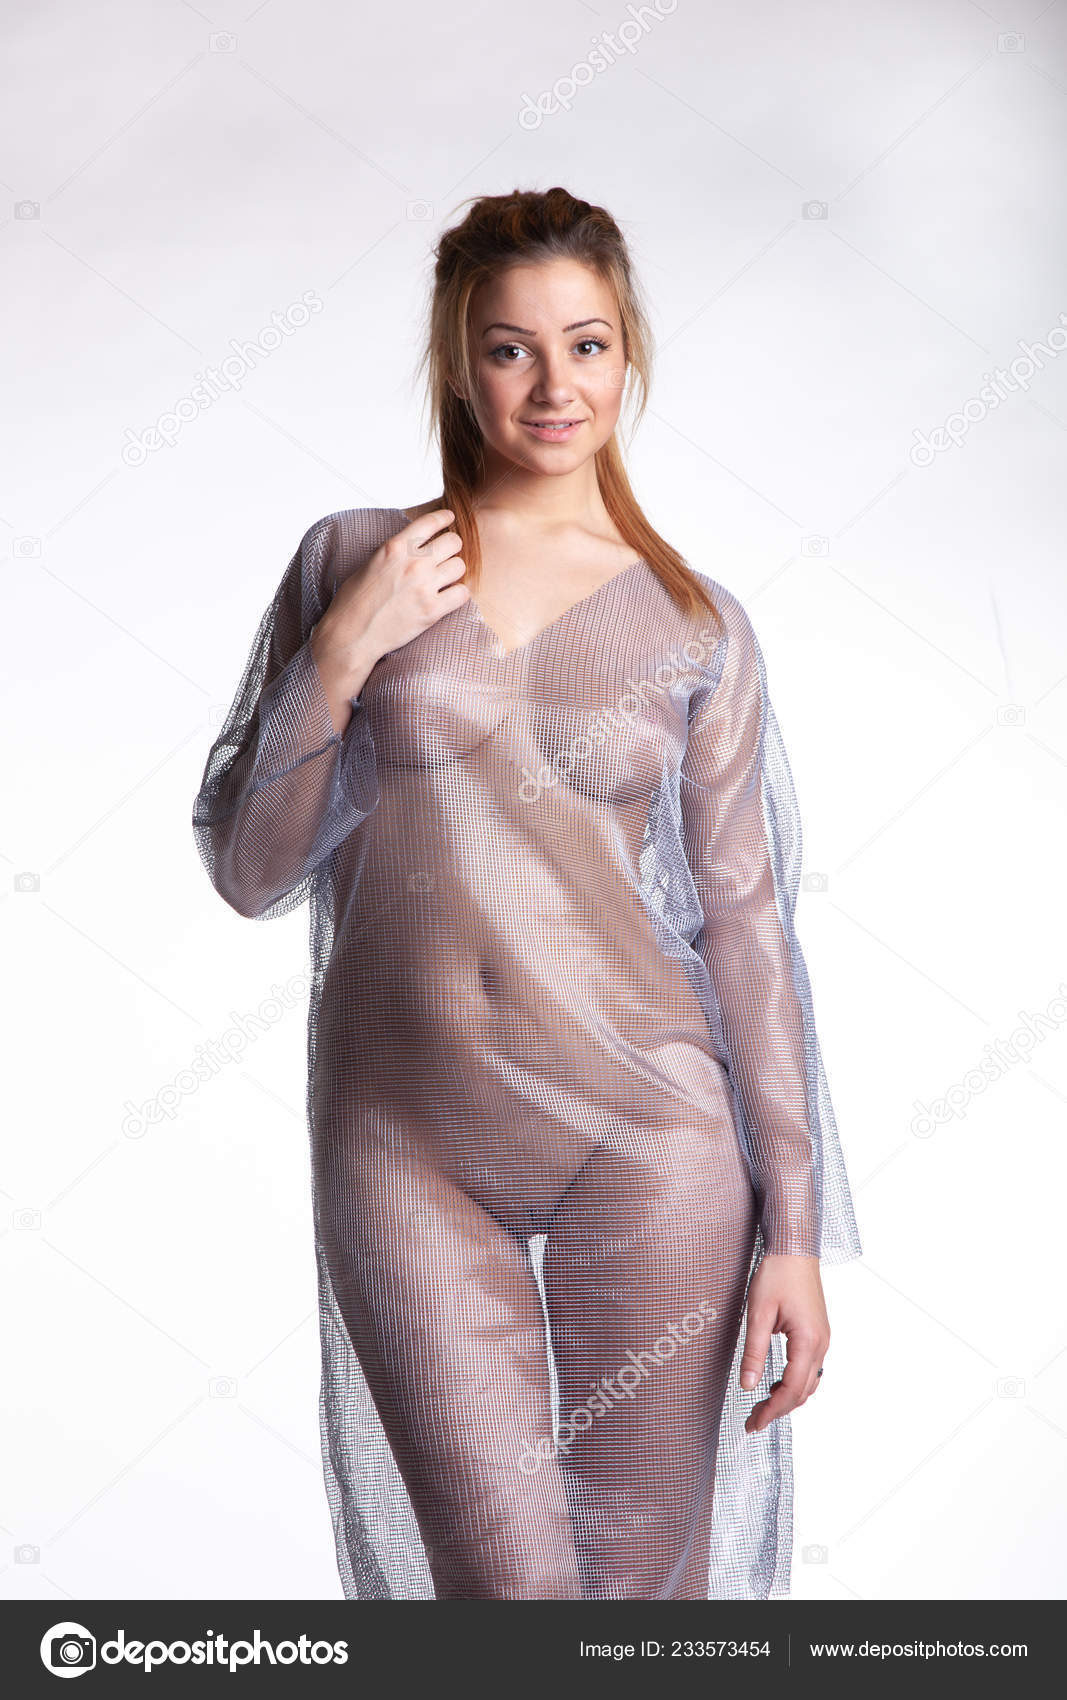 https://st4n.depositphotos.com/10086424/23357/i/1600/depositphotos_233573454-stock-photo-young-beautiful-girl-posing-nude.jpg